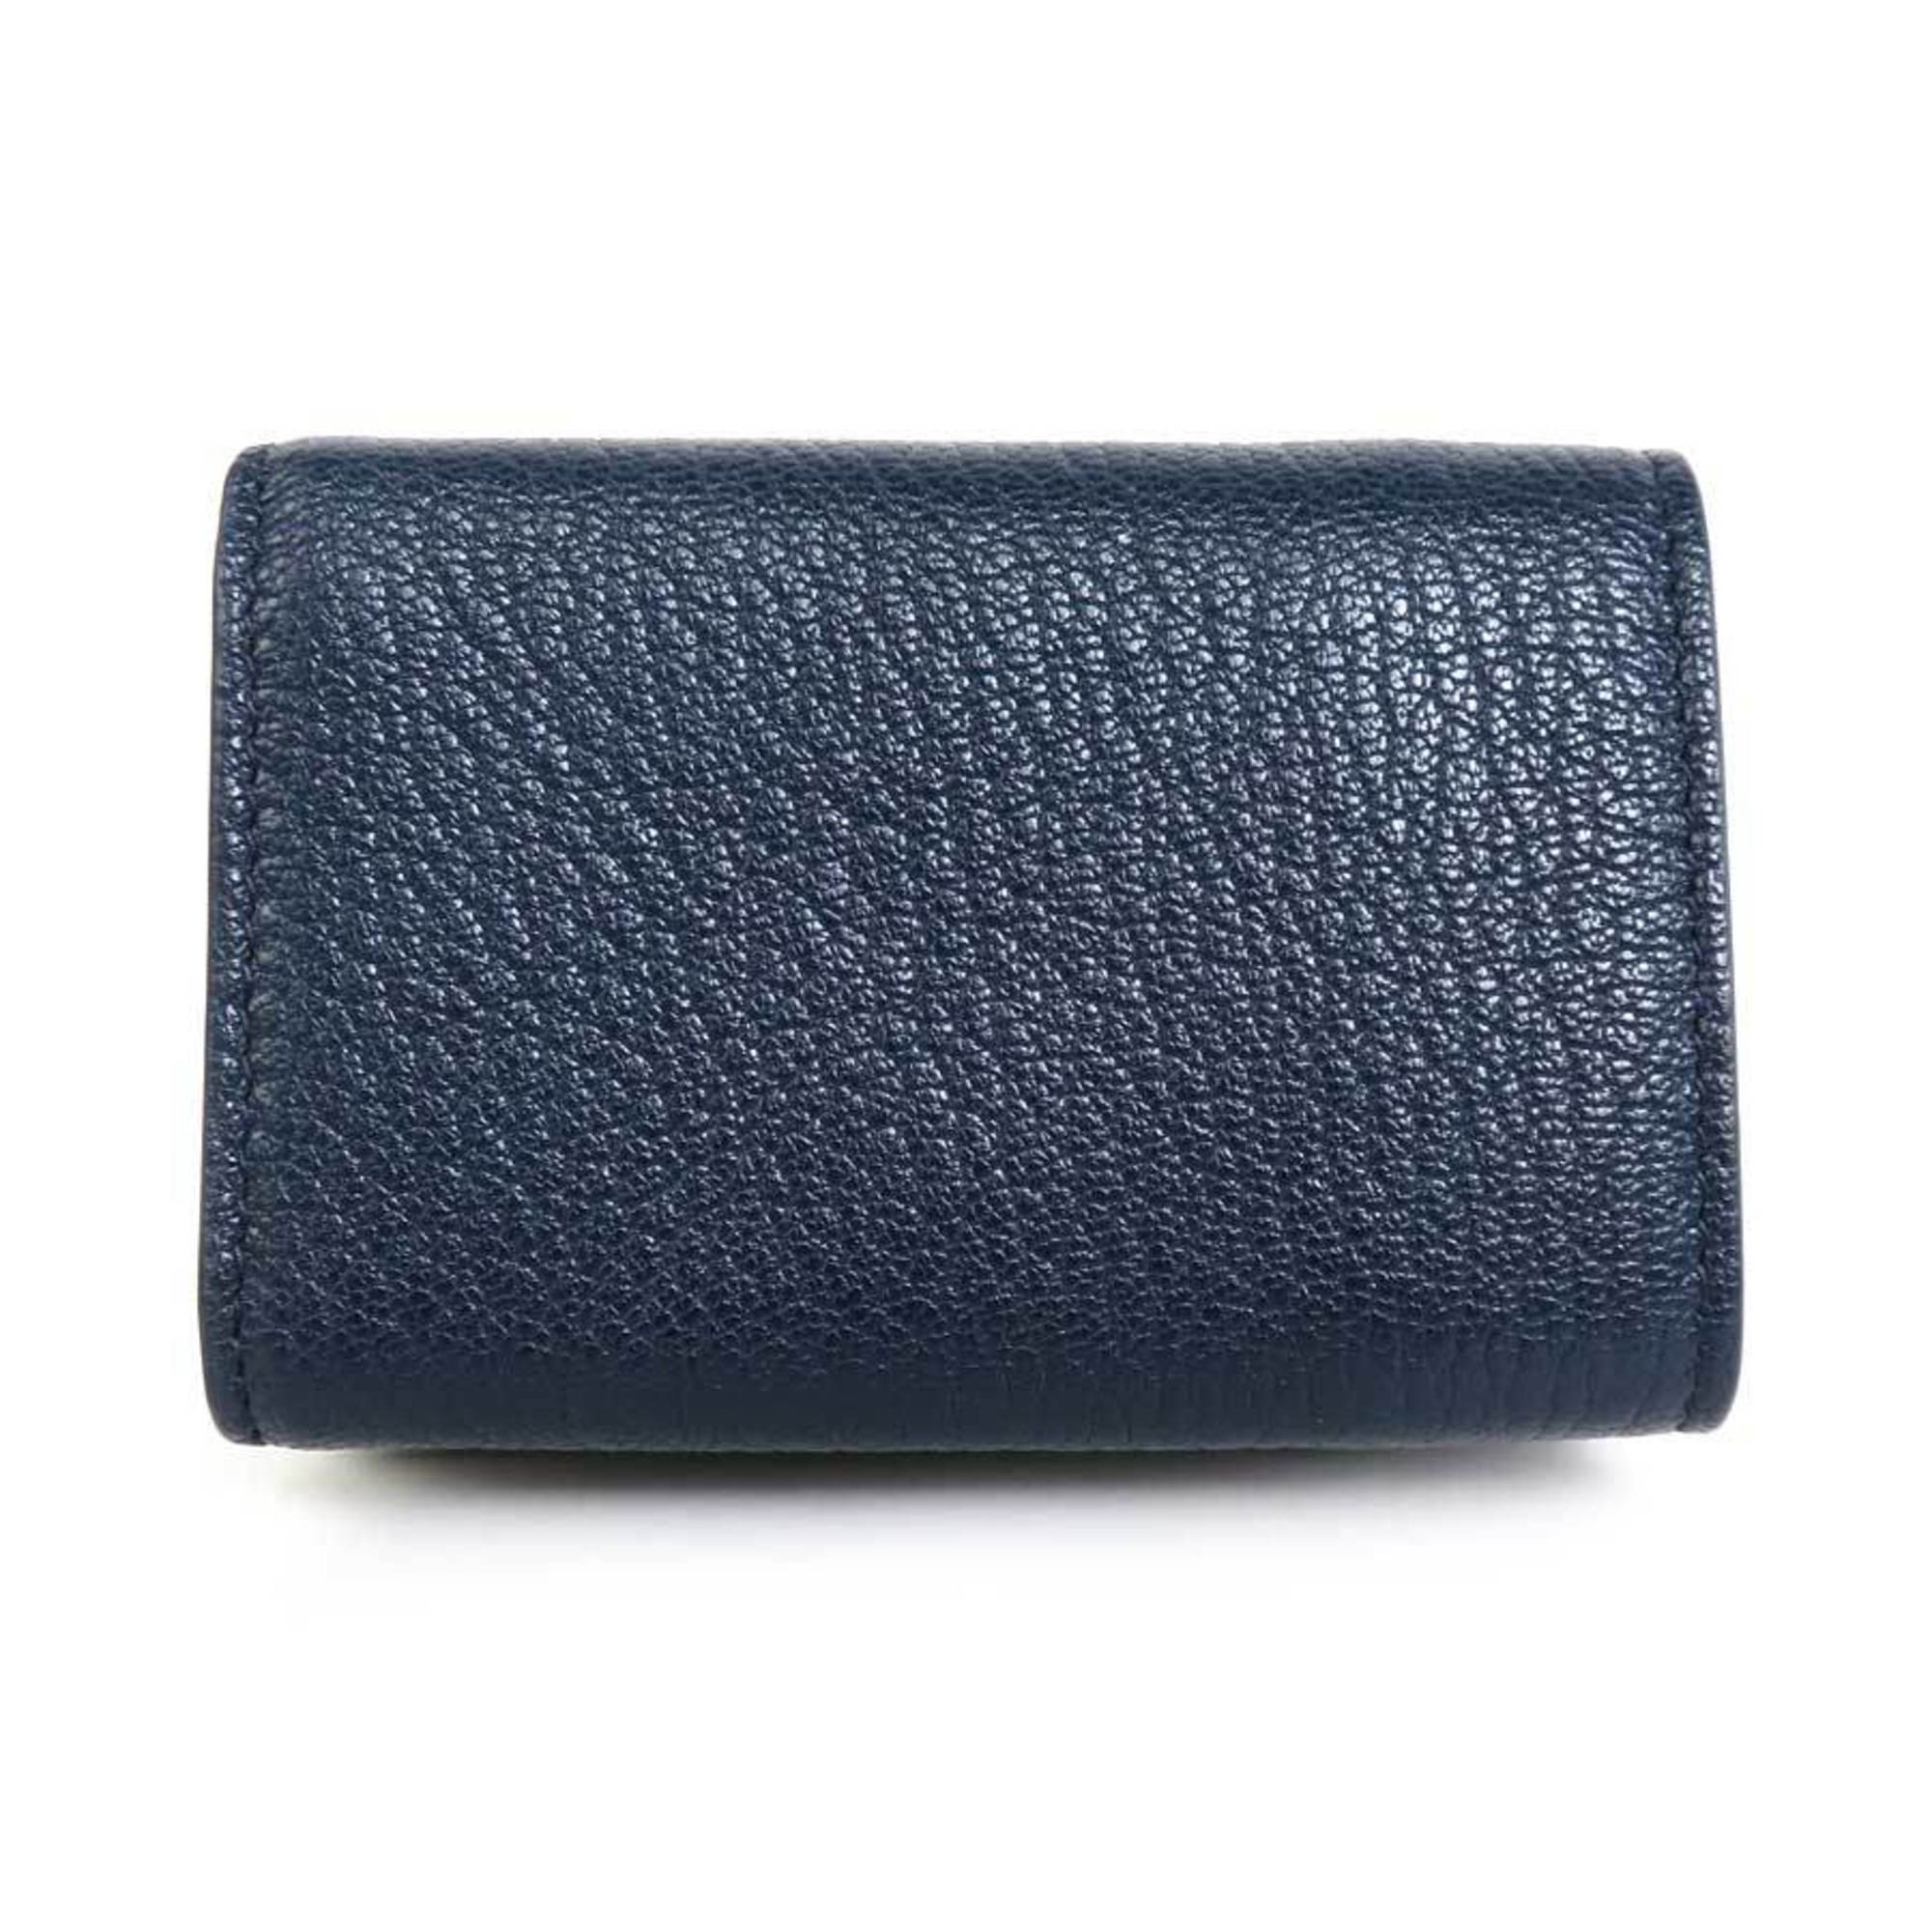 Balenciaga BALENCIAGA trifold wallet mini leather navy gold